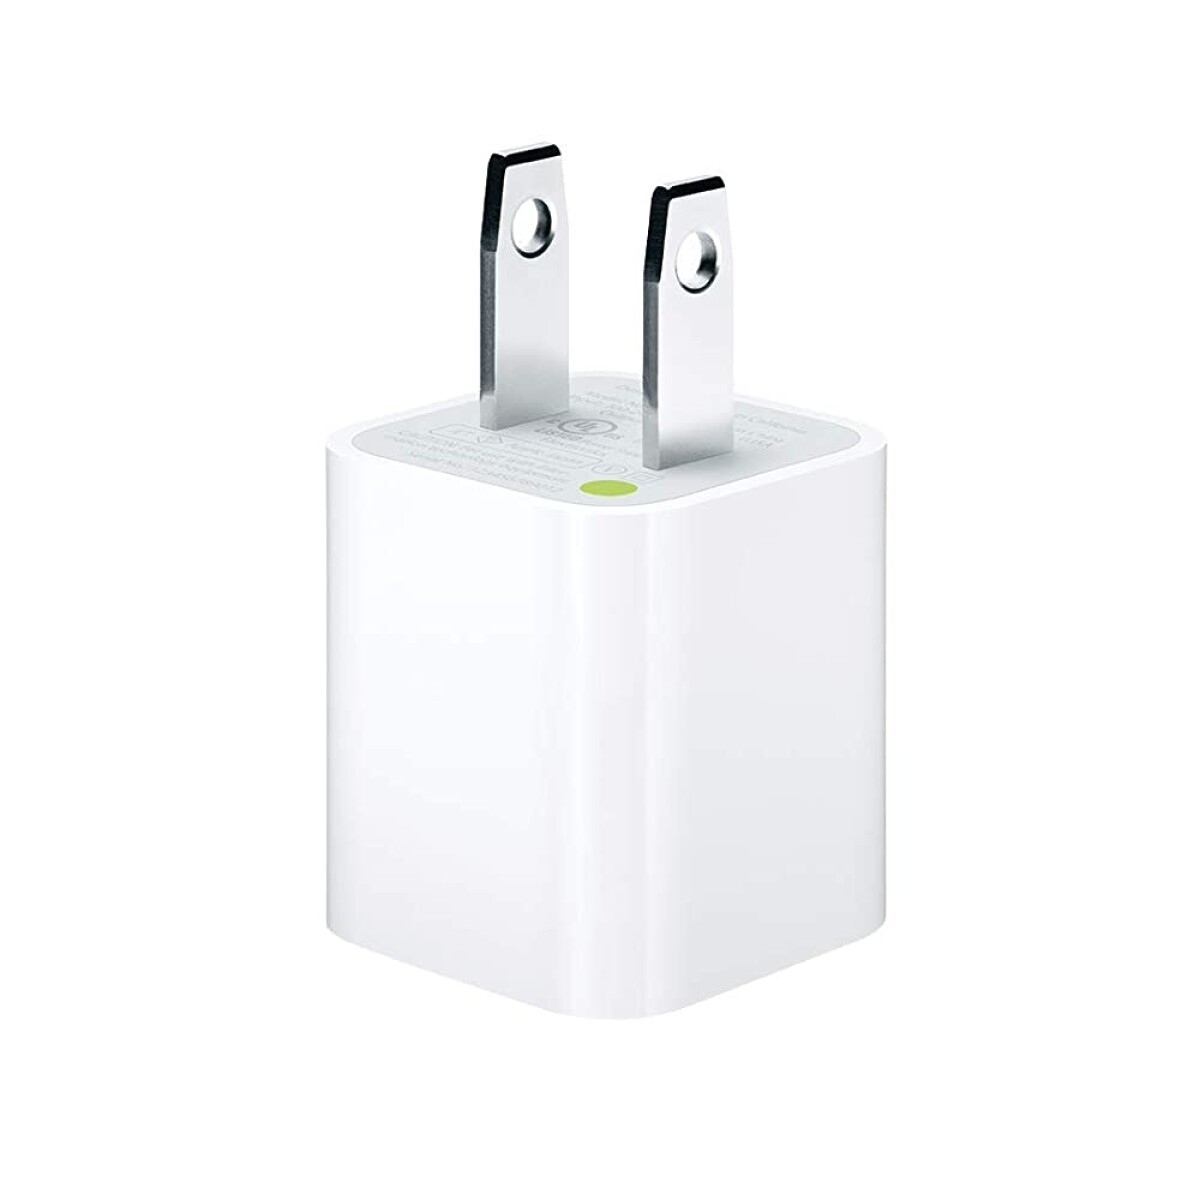 Cargador original apple power adapter usb 5w White